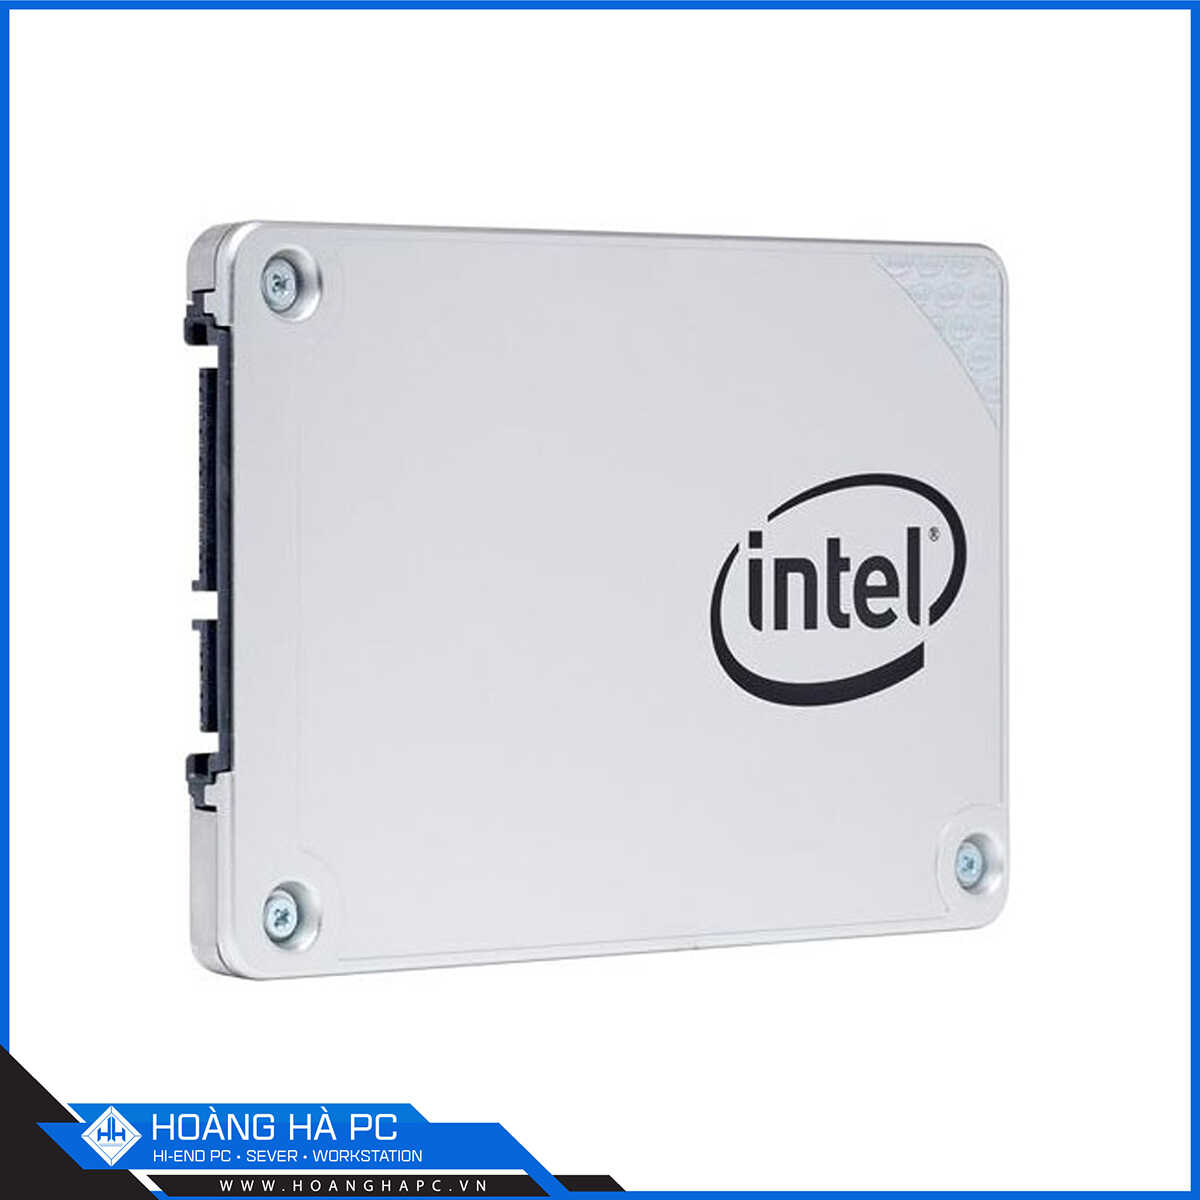 Ổ Cứng SSD Intel Pro 5400s 240G 2.5 inch Sata3 (Đọc 560MB/s - Ghi 480MB/s)